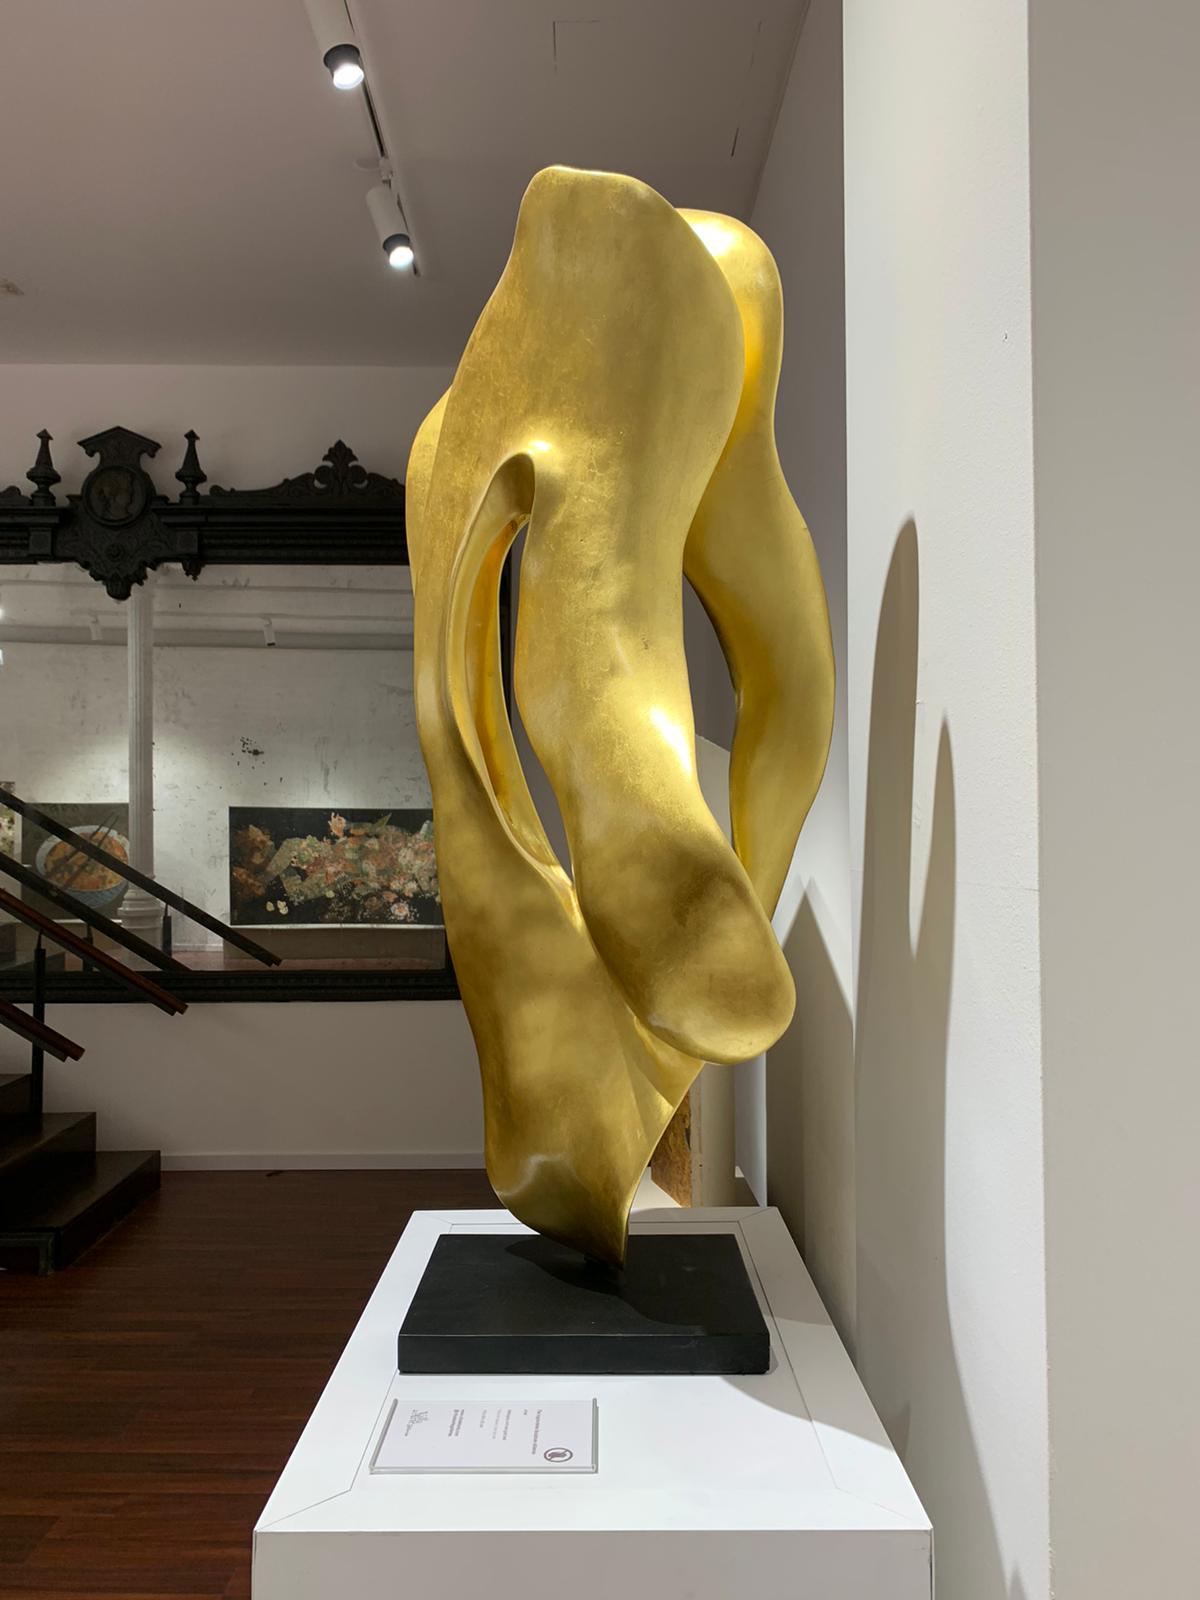 Racines en acajou avec feuilles d'or

L'Ingravidesa Sculpture Alliance est formée par un groupe international de sculpteurs et de designers qui collaborent pour créer des sculptures abstraites inspirées par la nature. Ils travaillent souvent